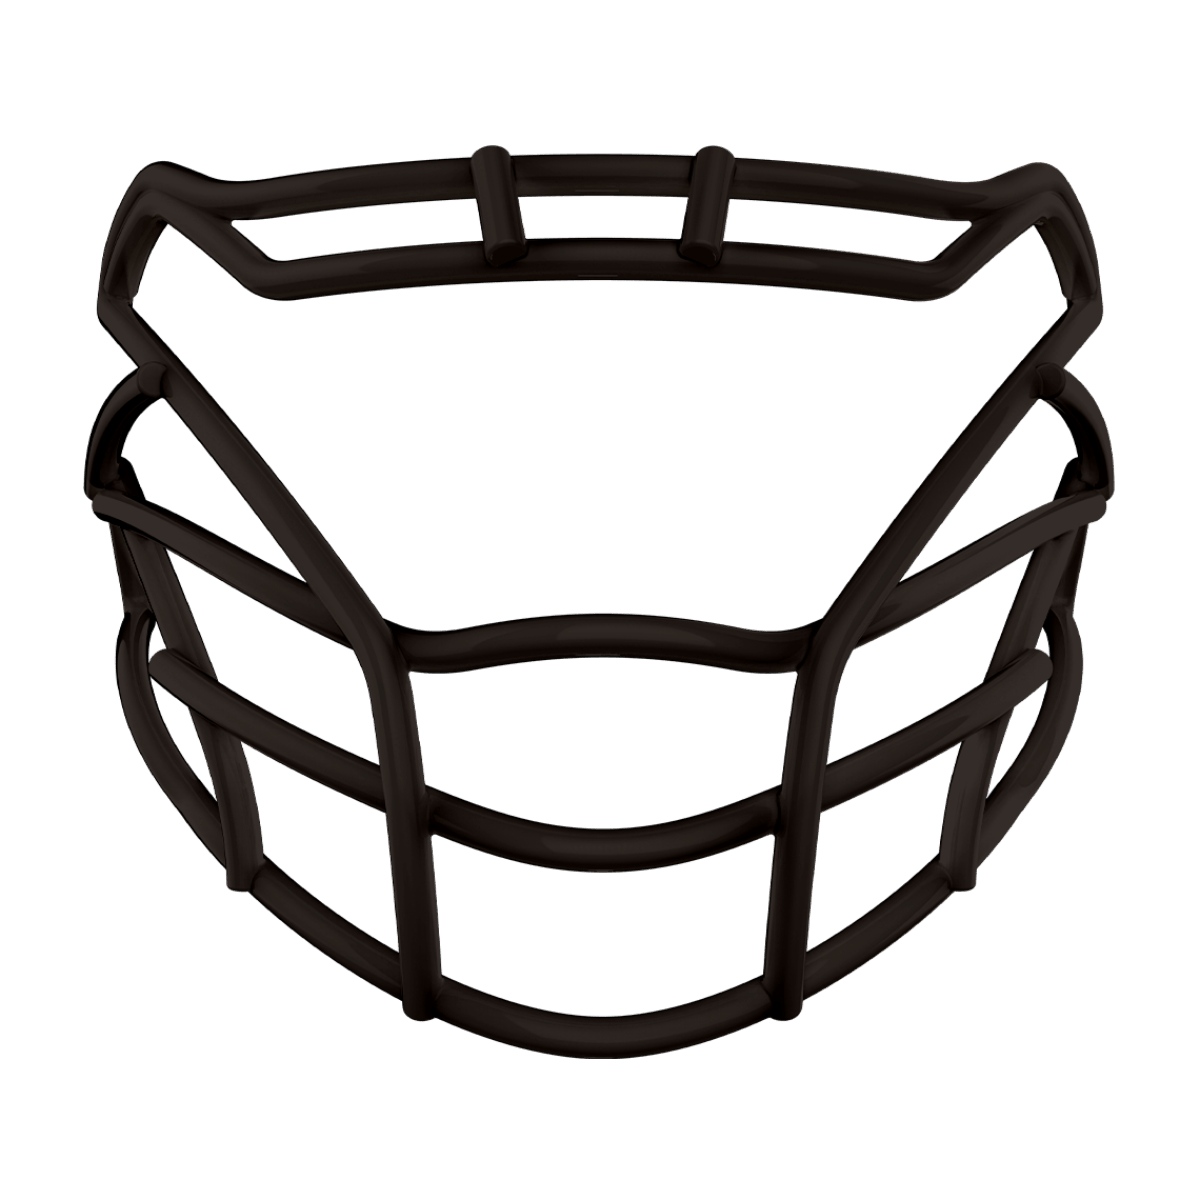 Black Prism face mask for football helmet.